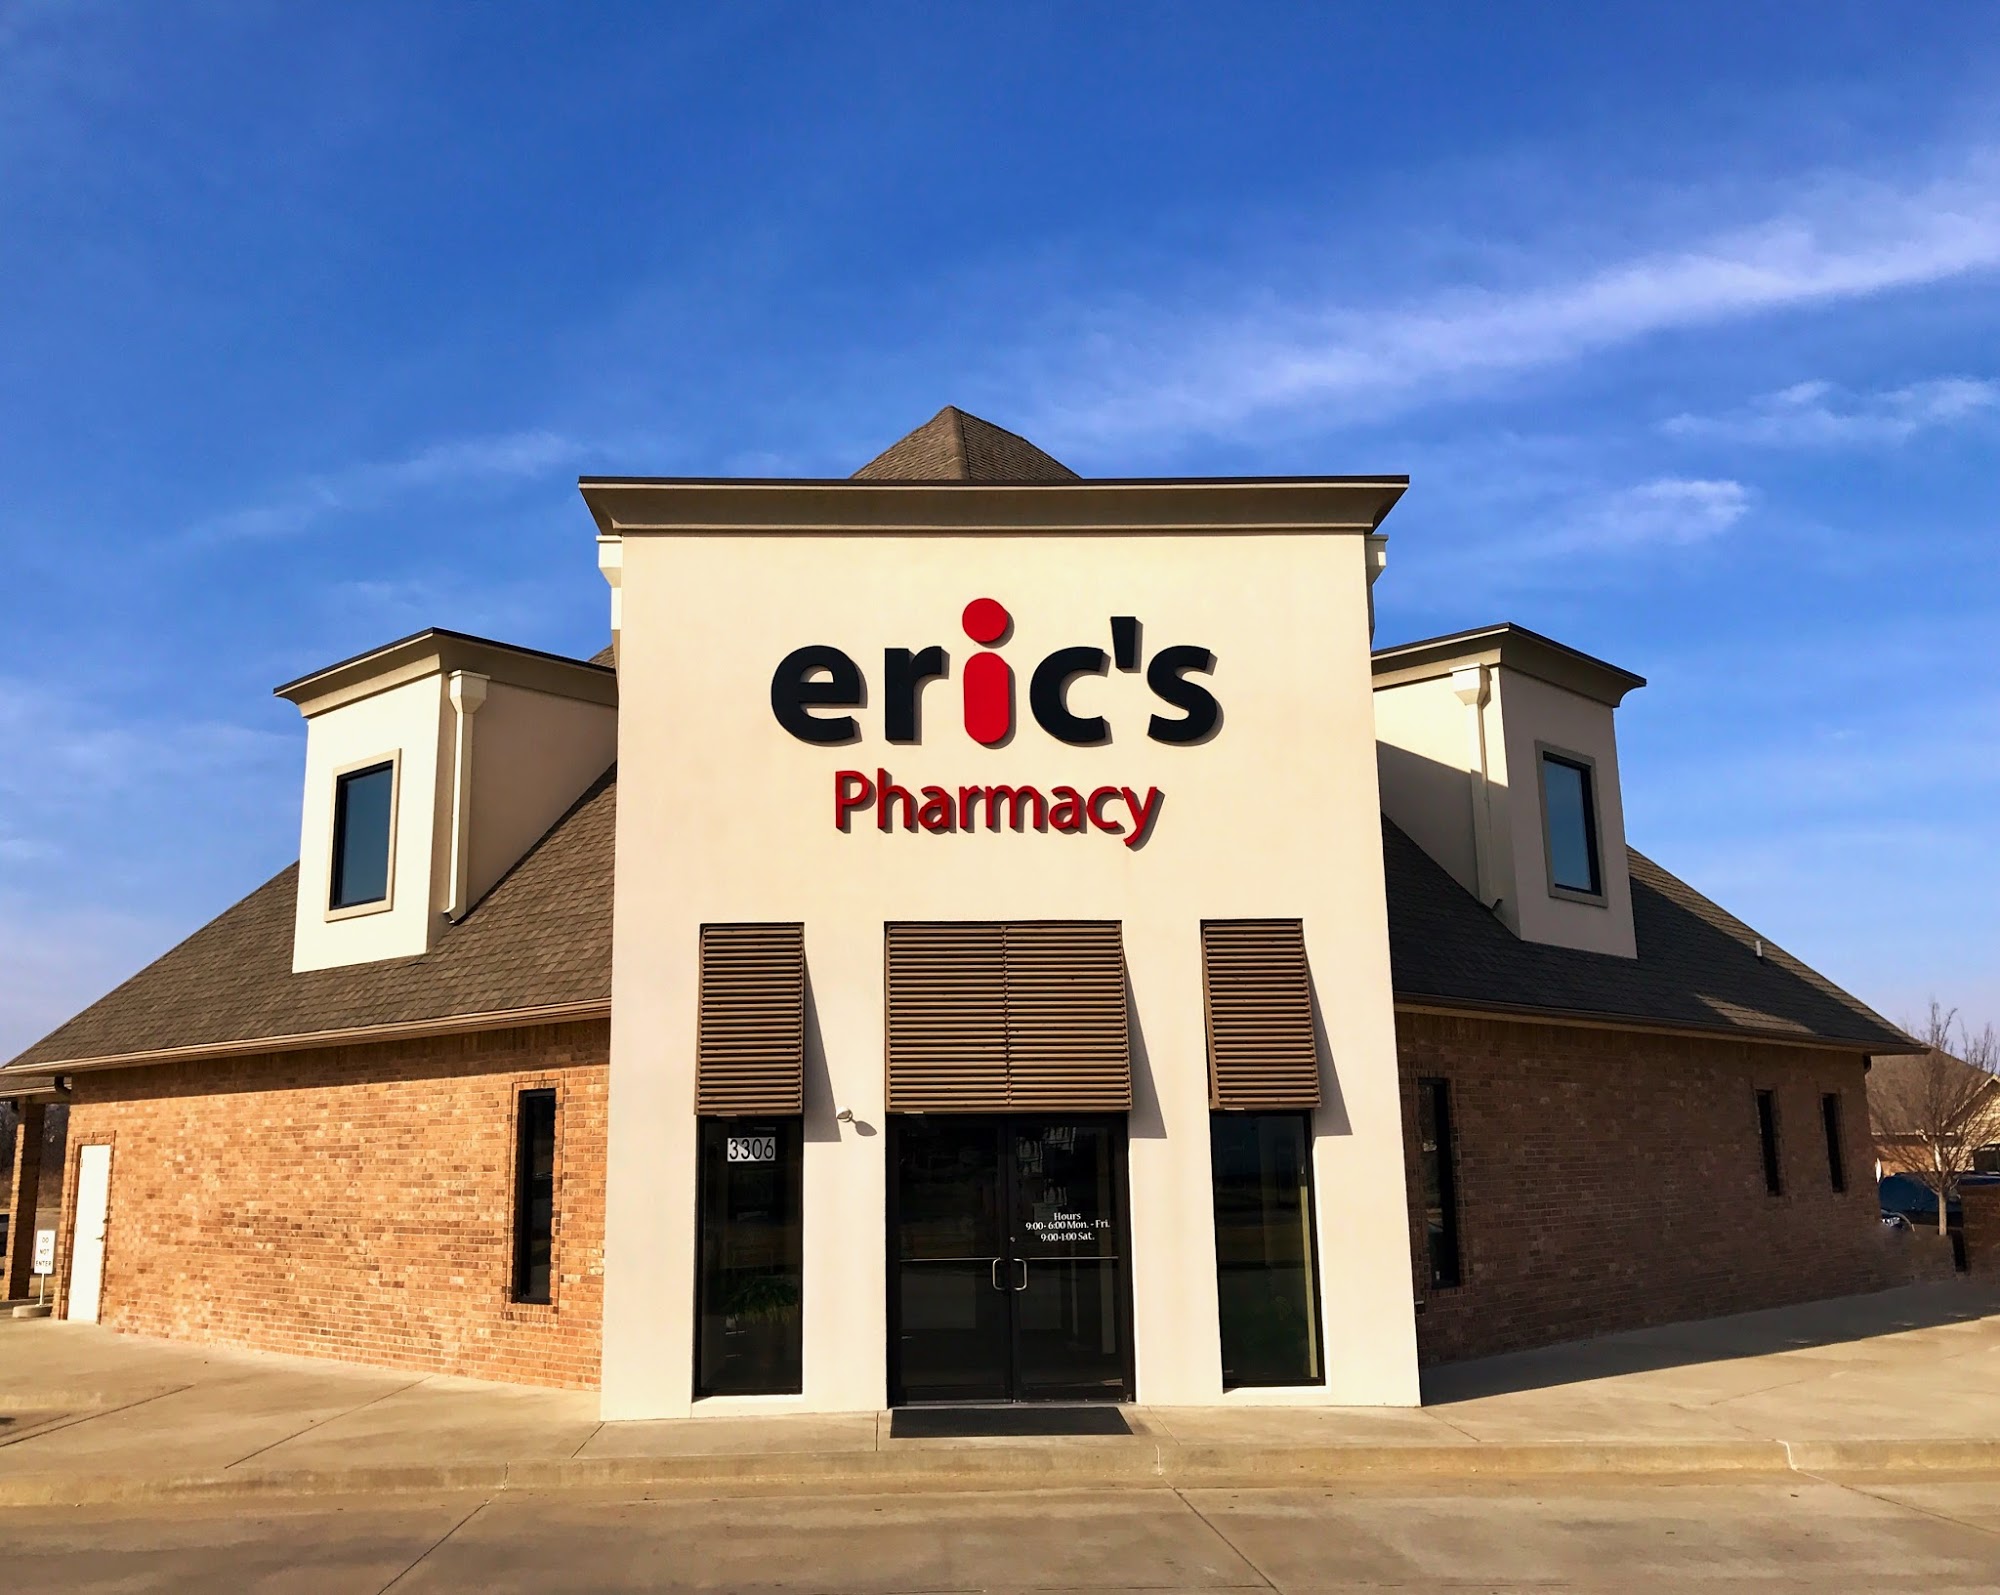 Eric's Pharmacy